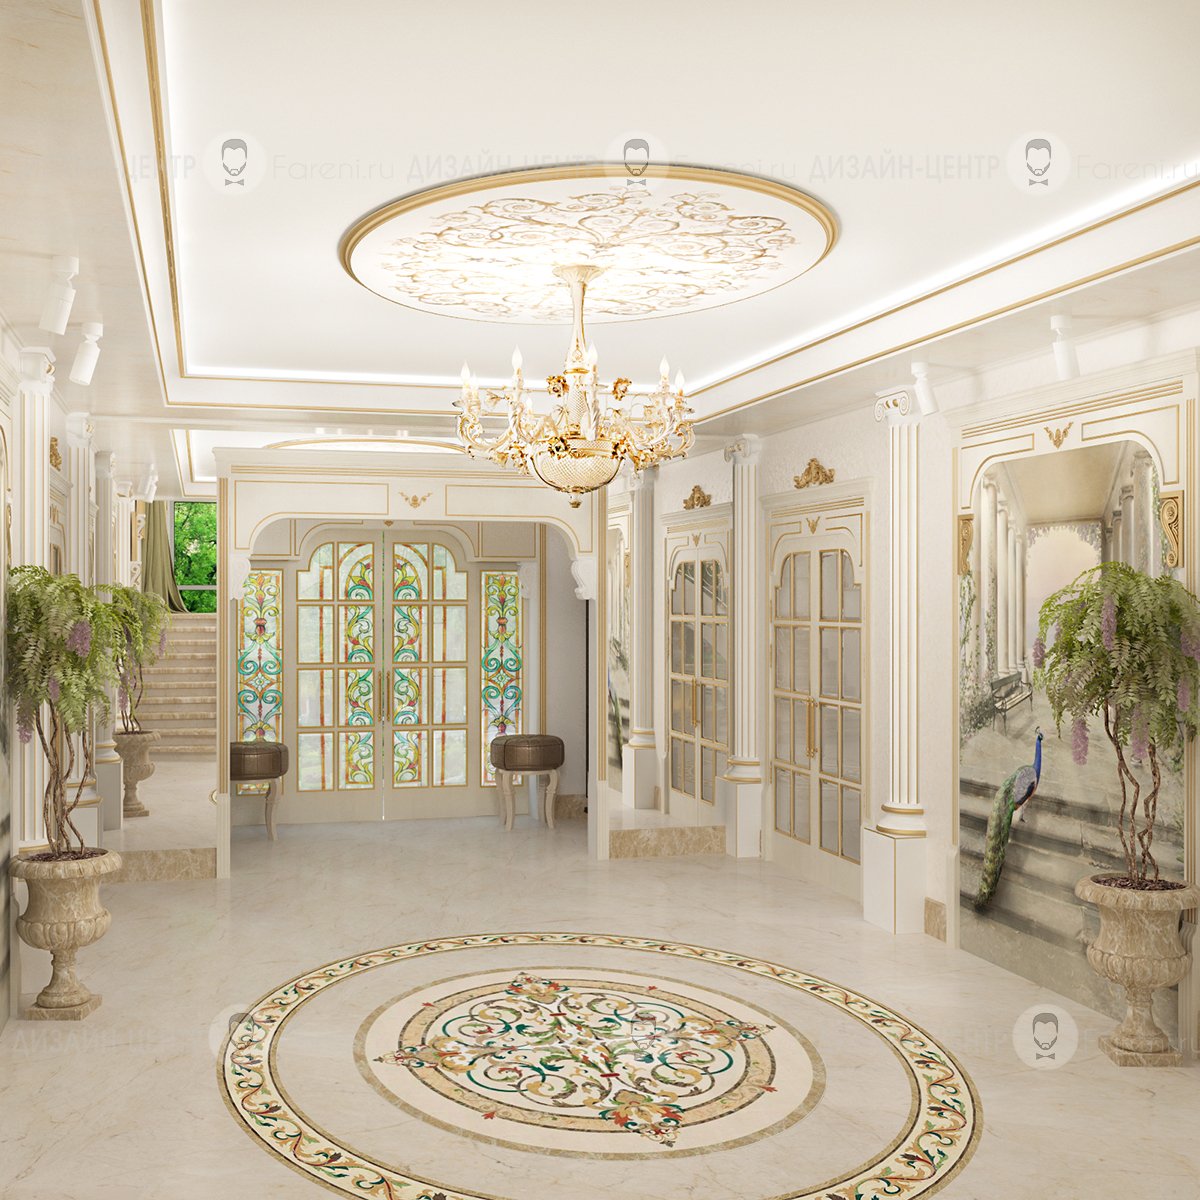 В холе. Antonovich Design коридор. Холл в доме. Интерьер холла. Фойе в классическом стиле.